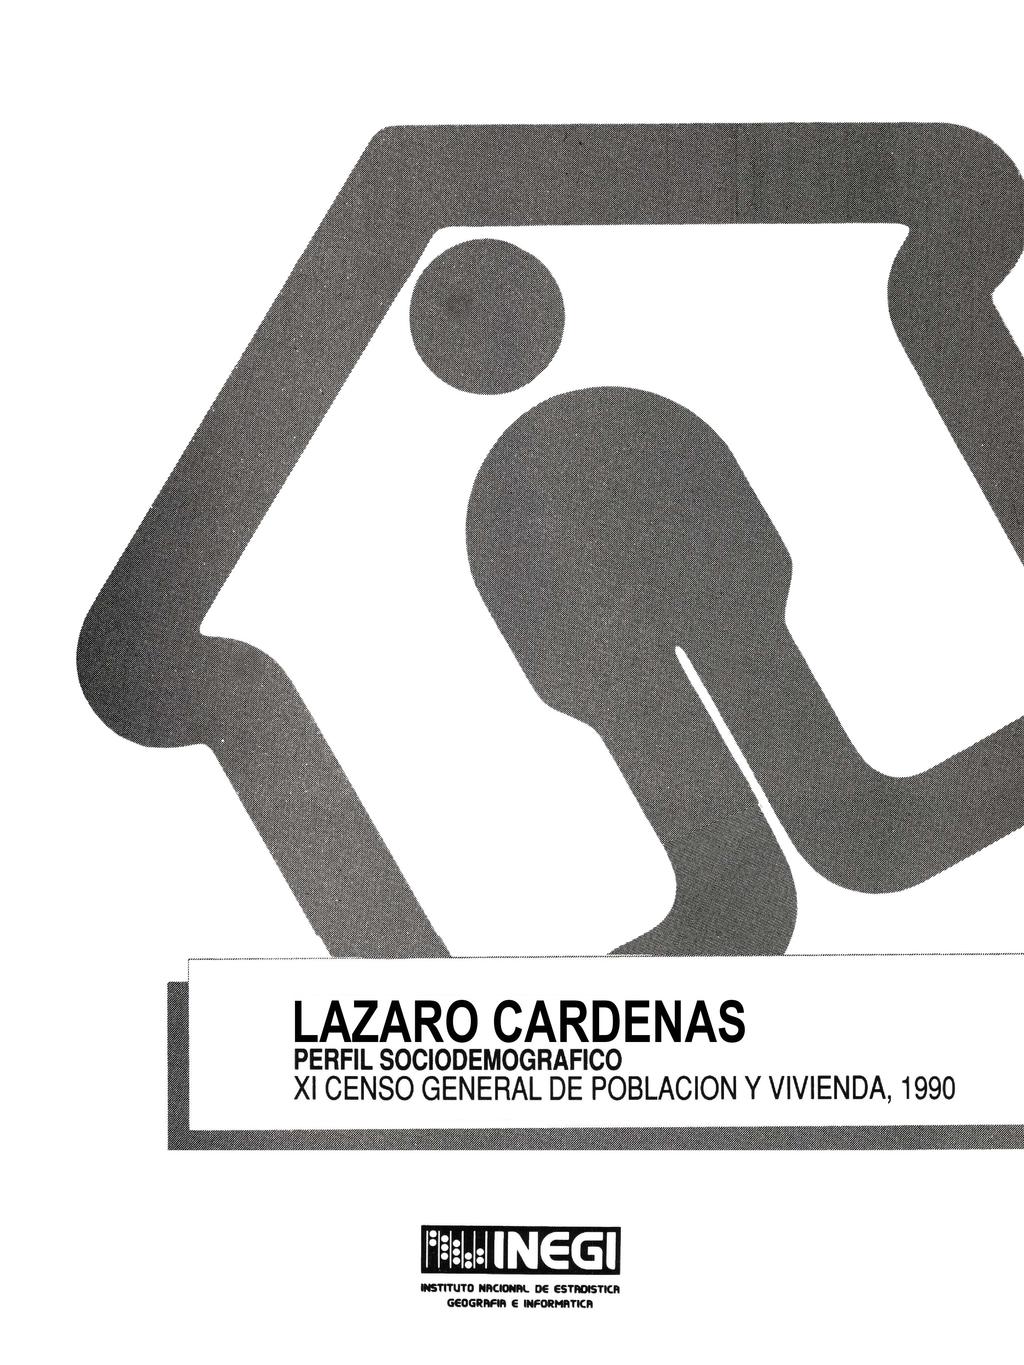 LAZARO CARDENAS PERFIL SOCIODEMOGRAFICO XI CENSO GENERAL DE POBLACION y